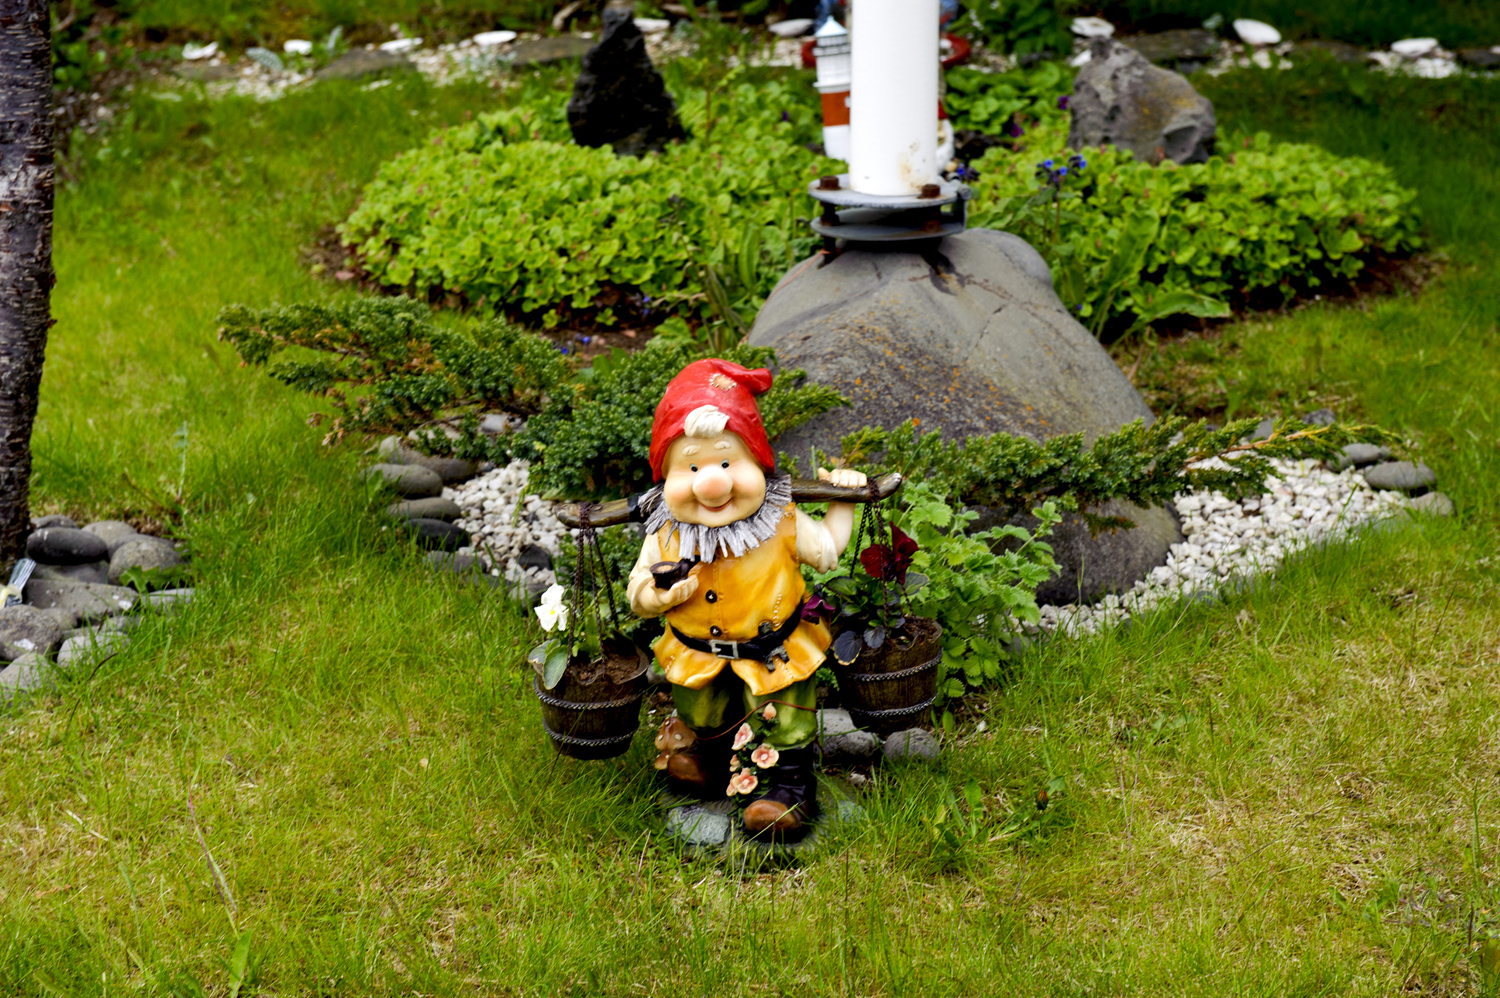 Gnome lawn ornament